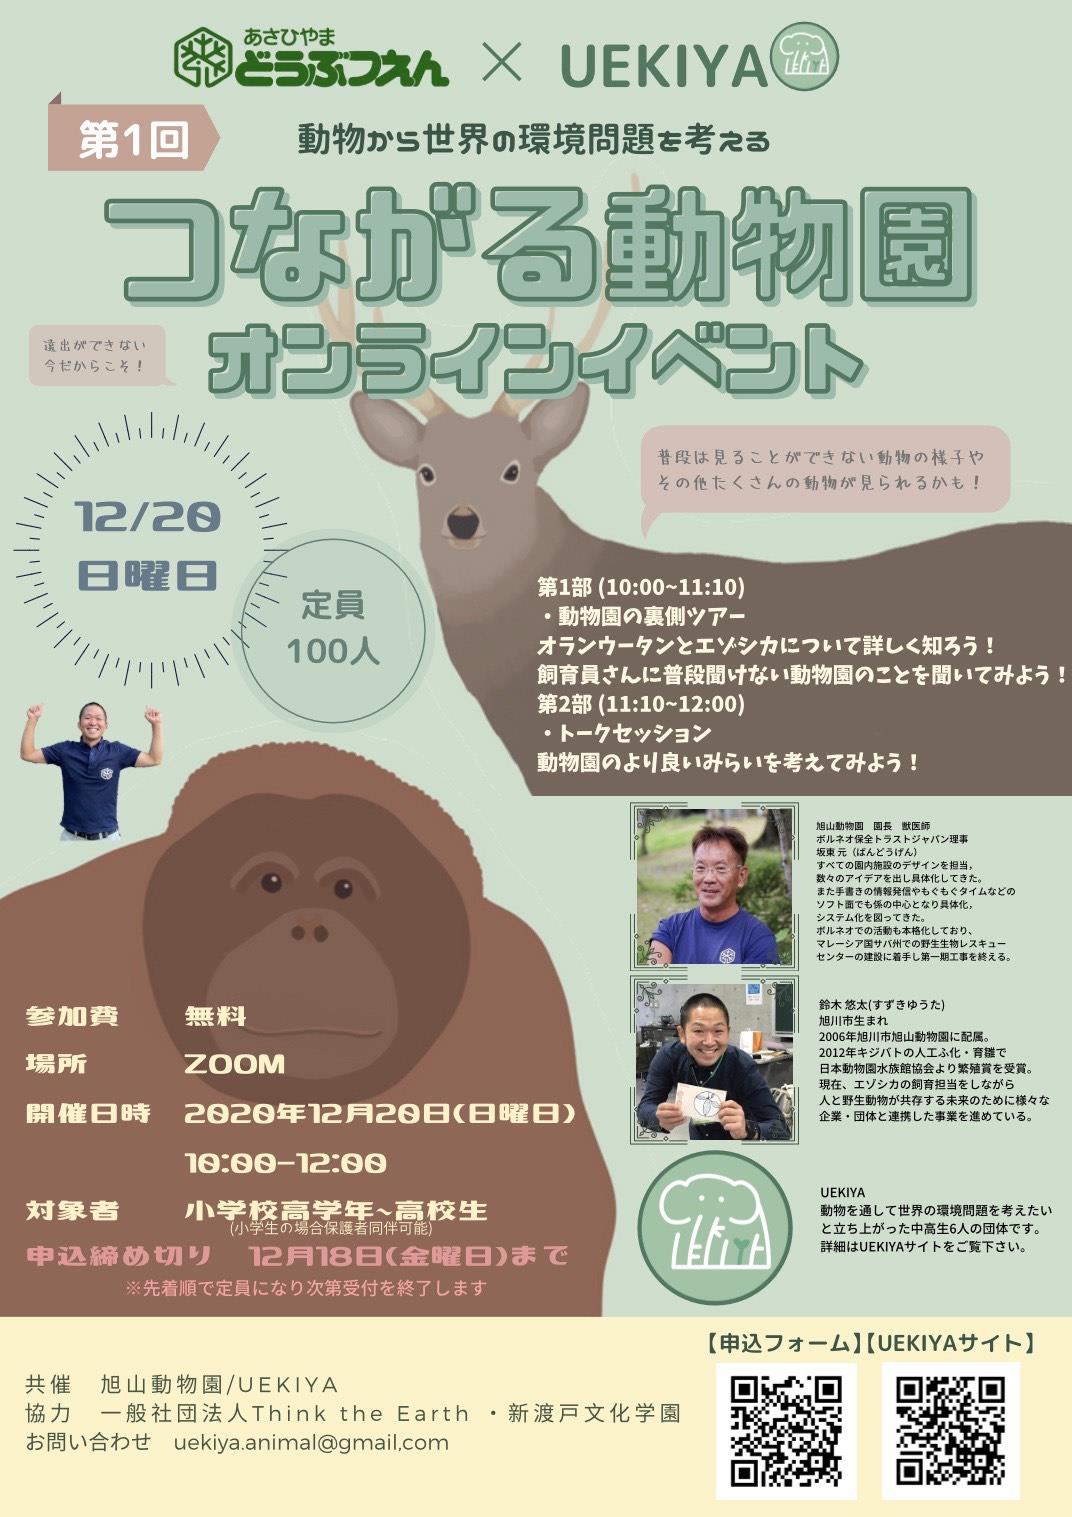 つながる動物園オンラインイベントの実施について 旭川市 旭山動物園